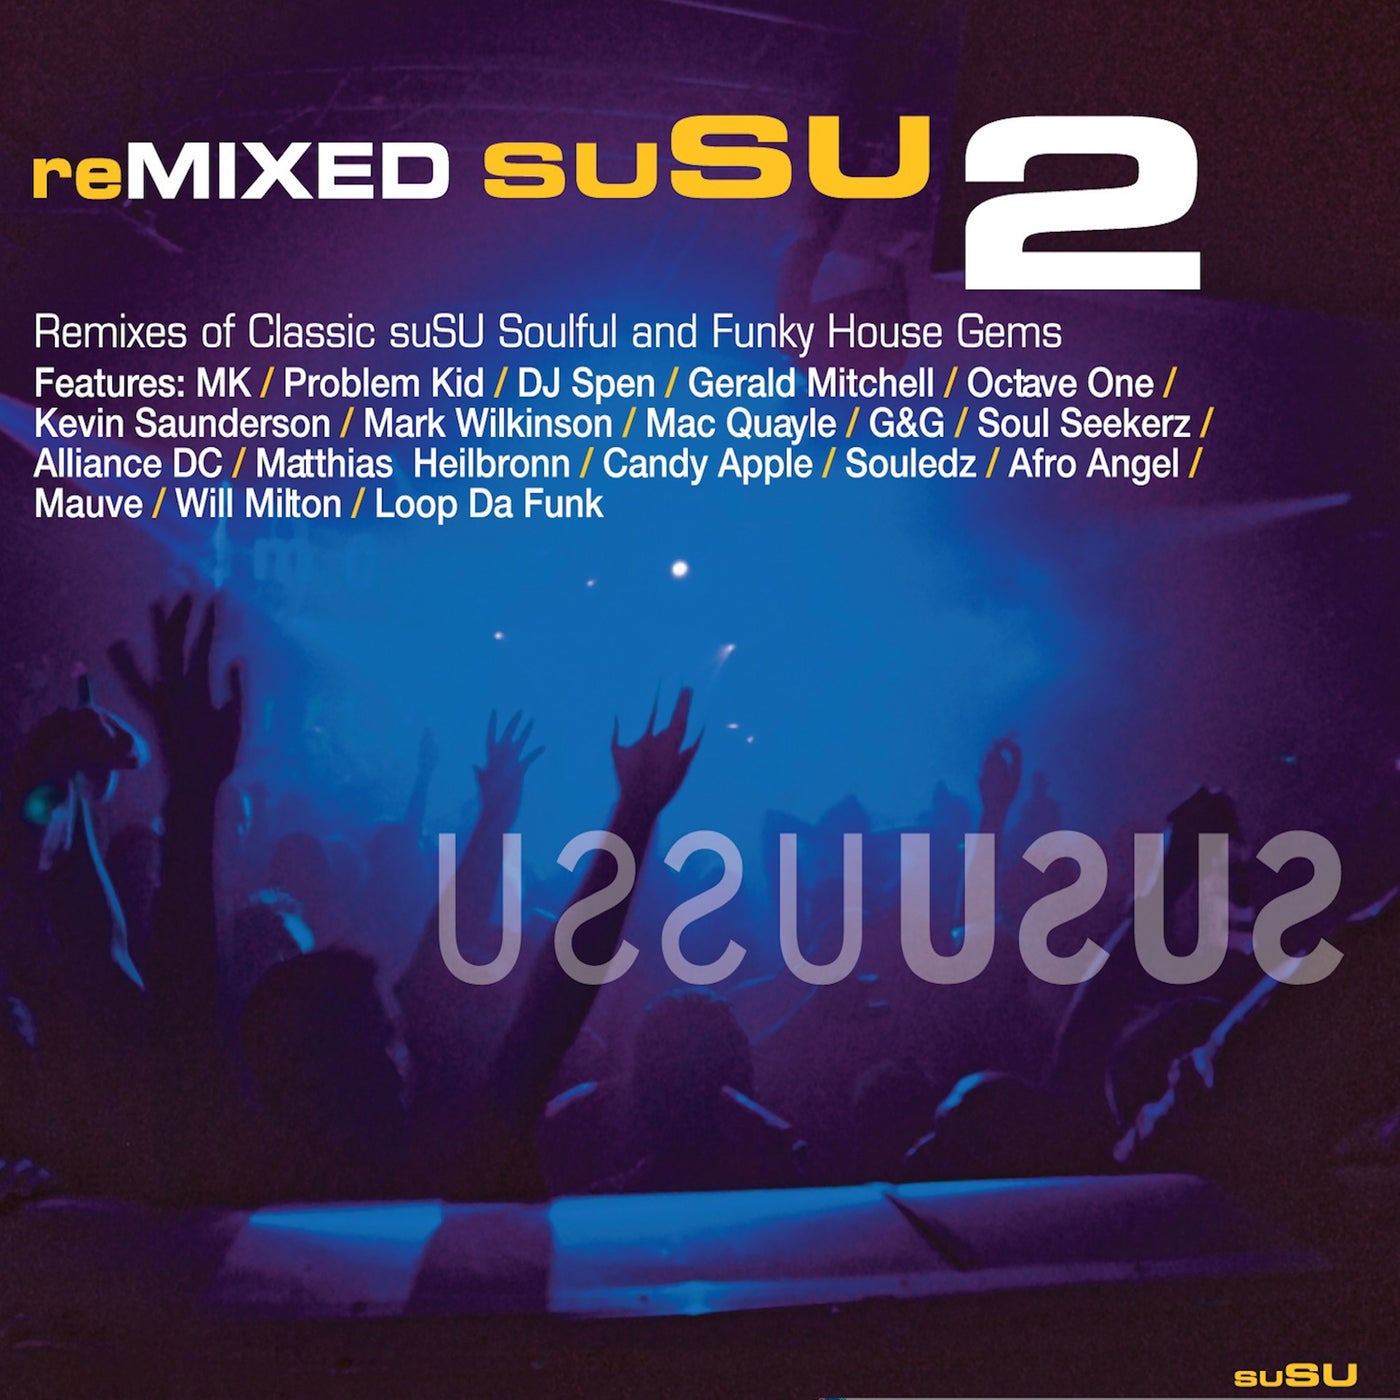 reMIXED suSU 2 (Bonus Edition)